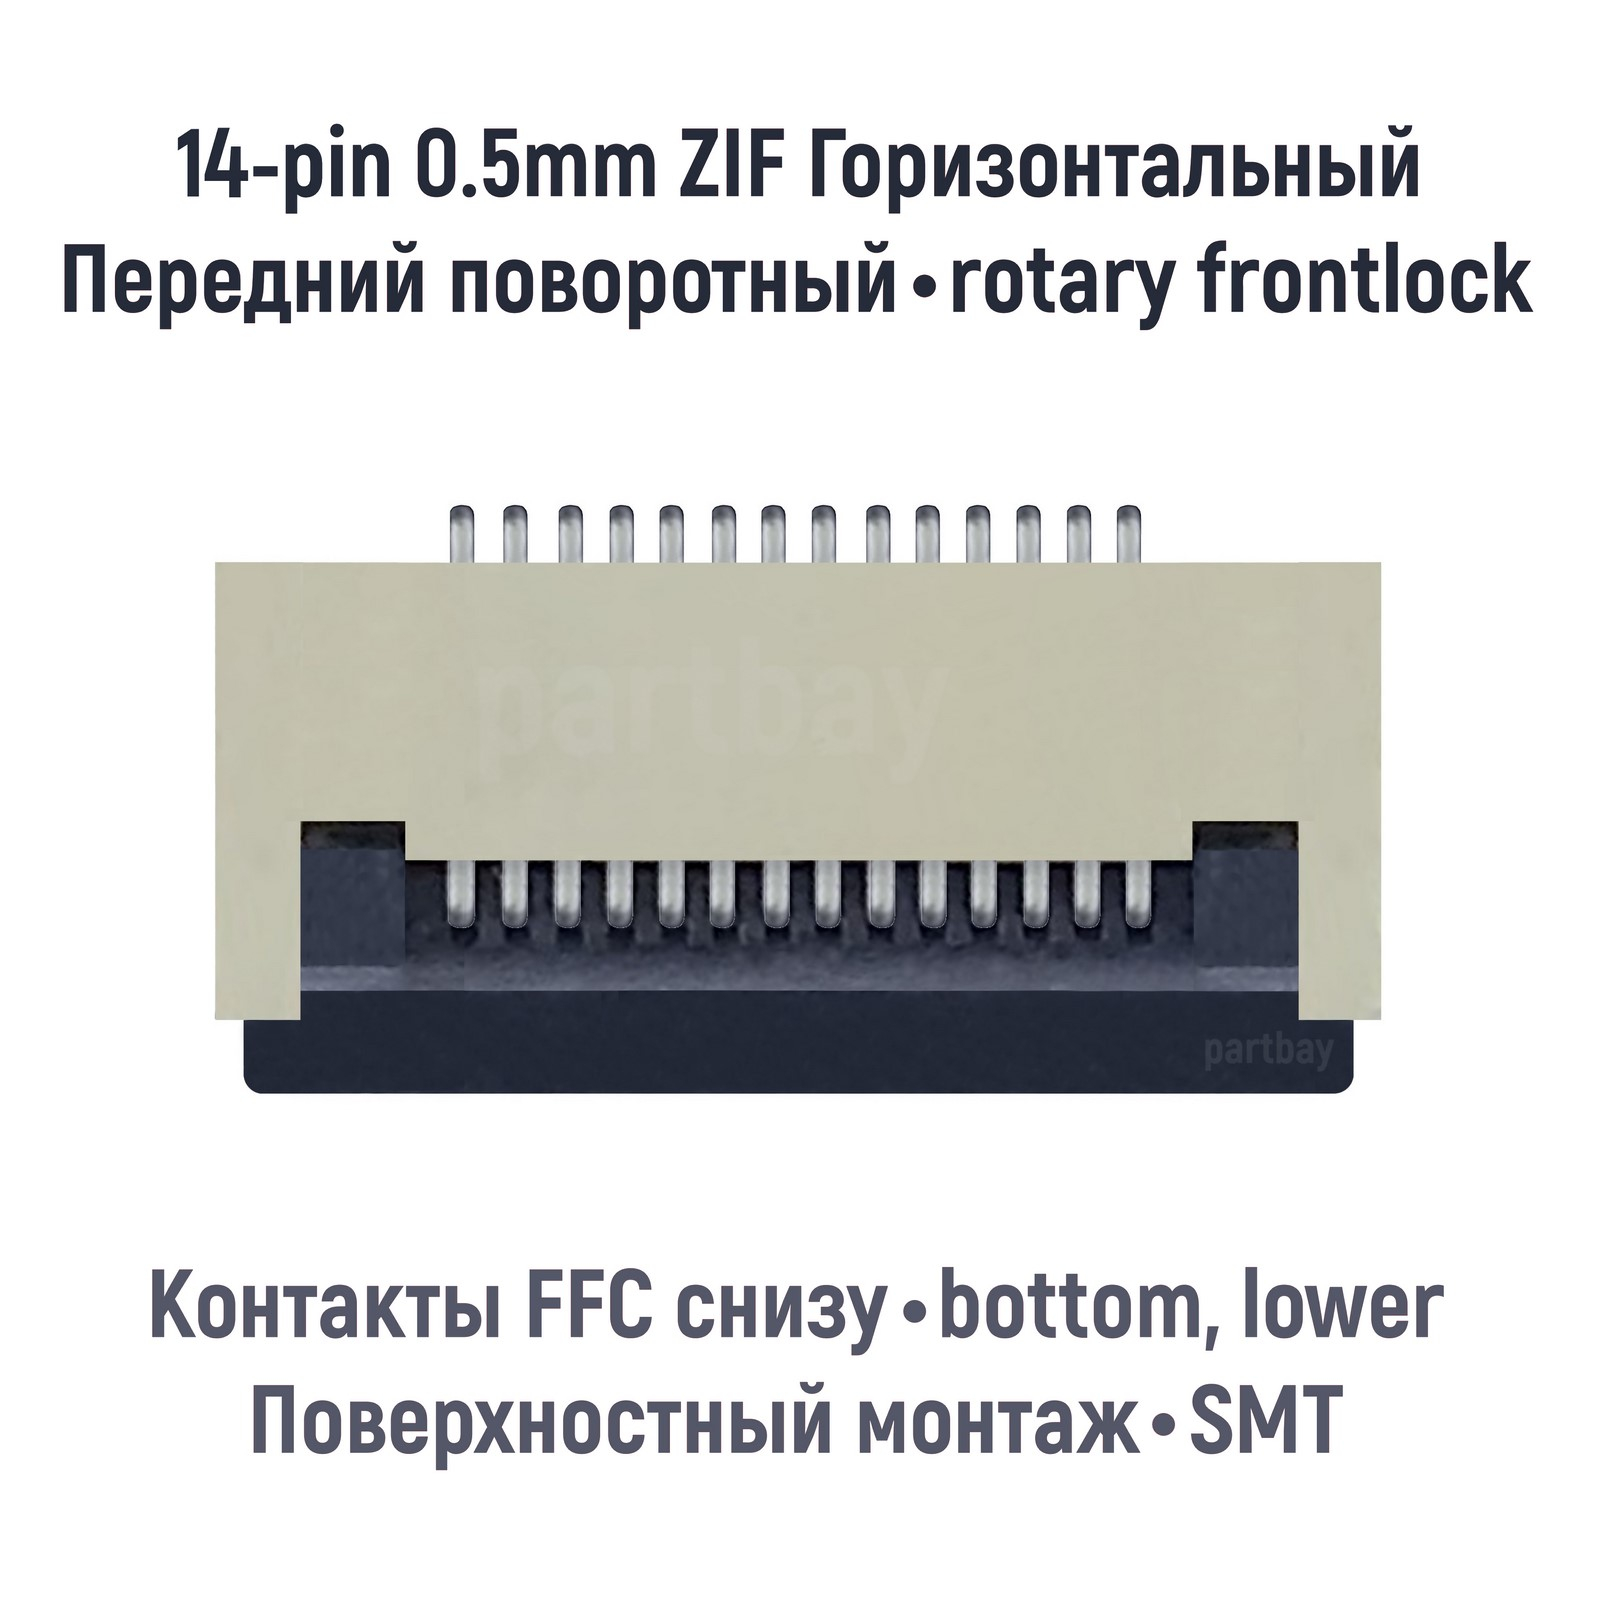 Коннектор OEM для FFC FPC шлейфа 14-pin шаг 0.5mm ZIF